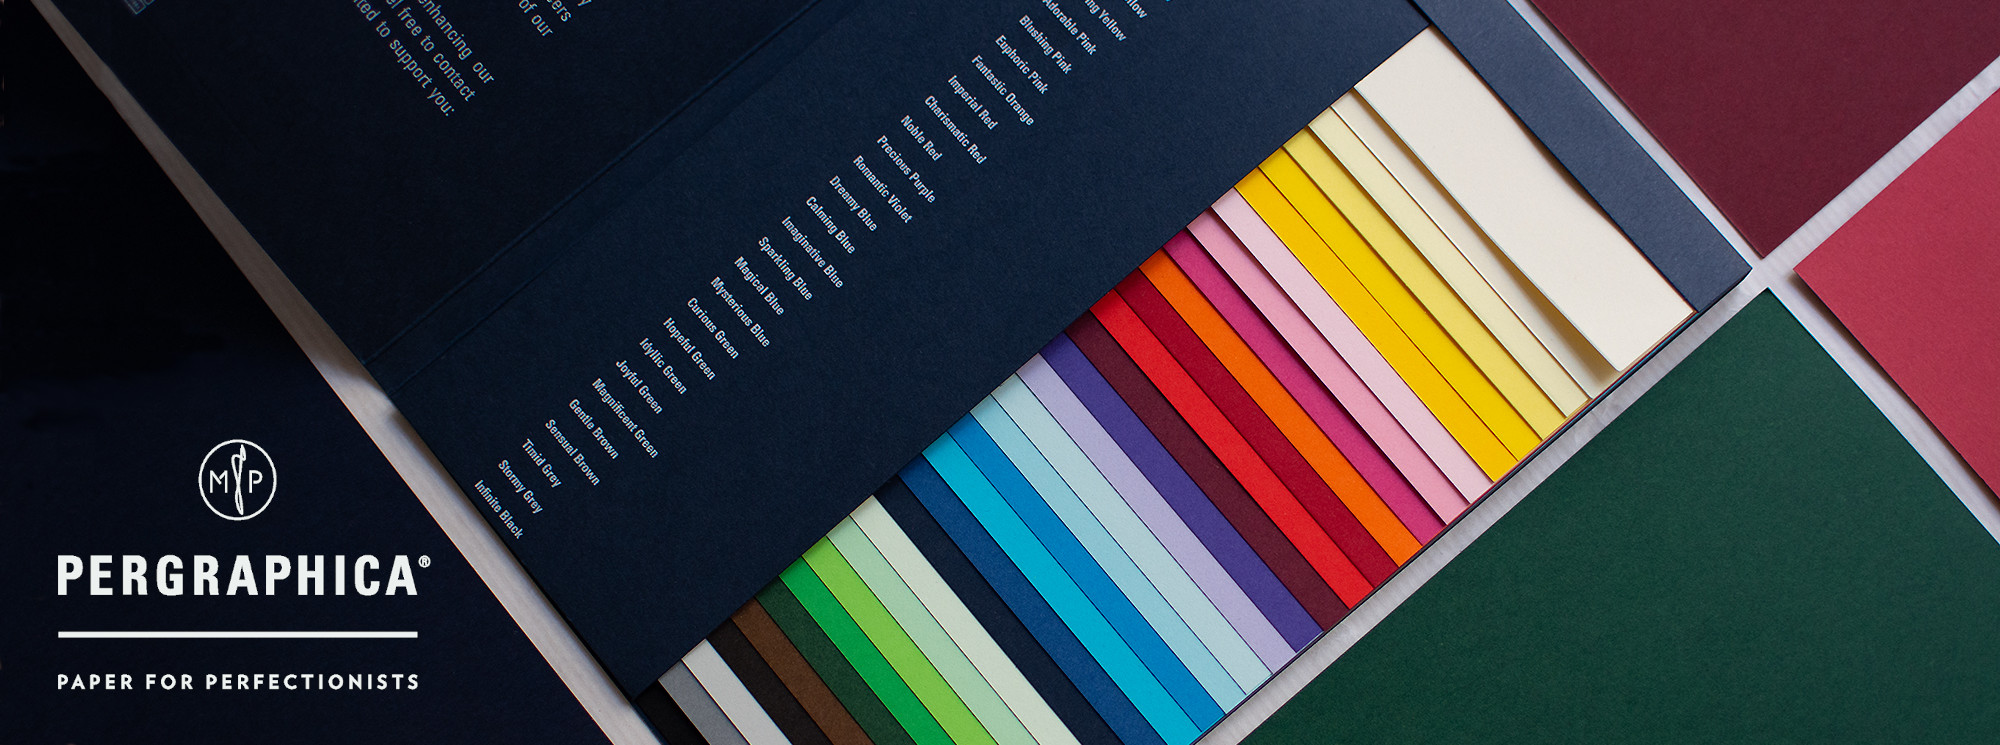 Pergraphica Coloured Paper & Board